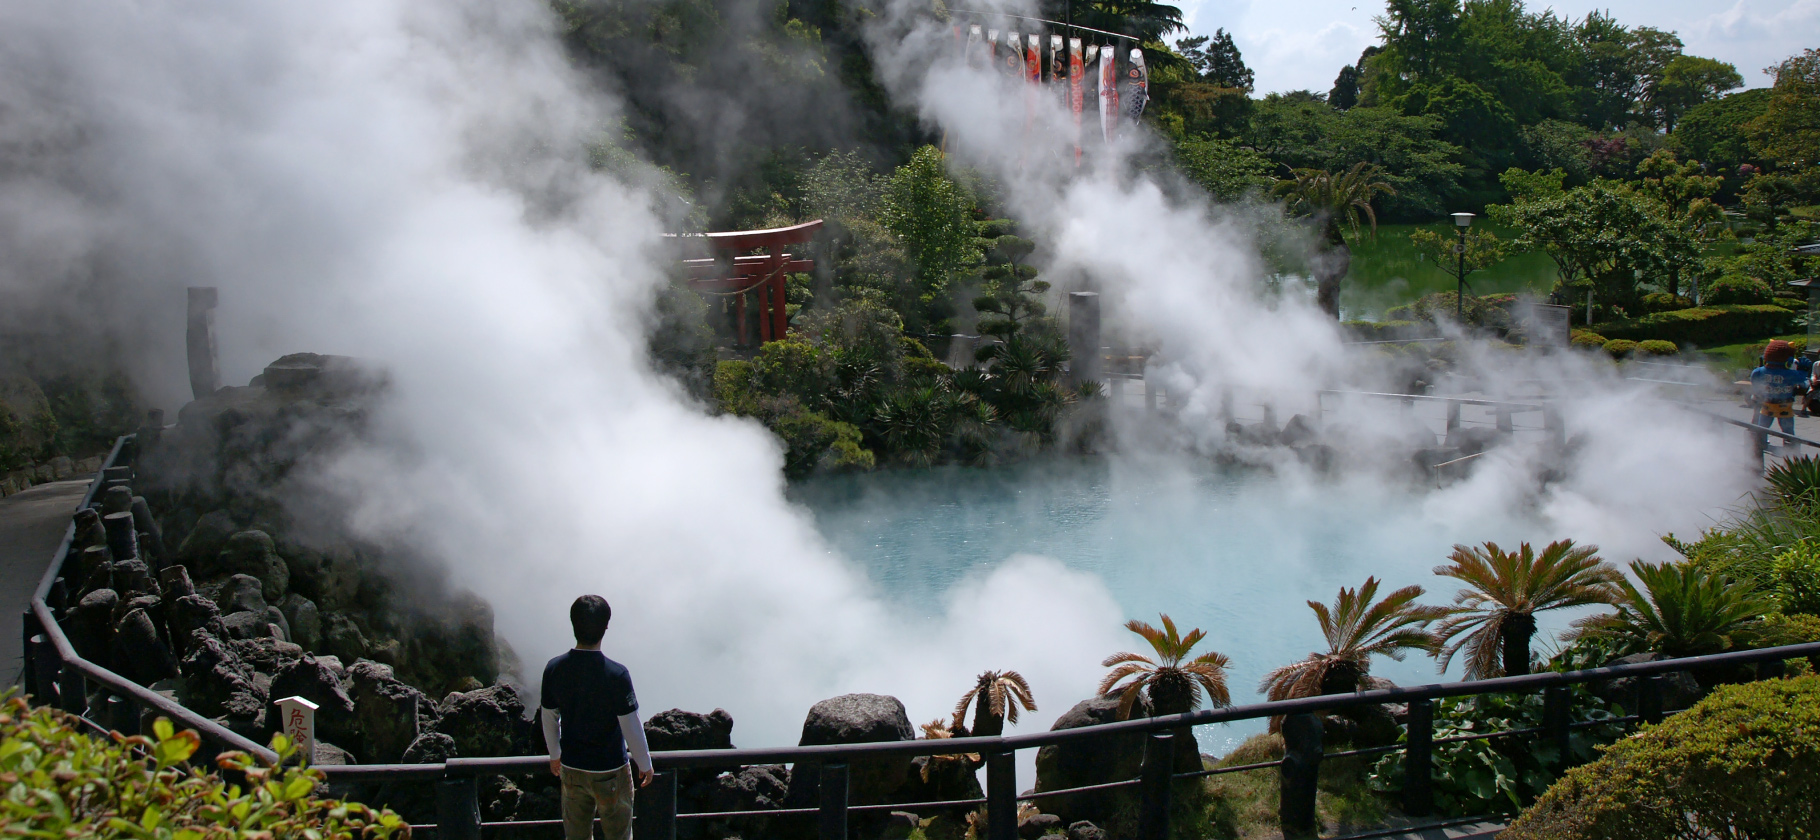 10 популярных курортов с горячими источниками в Японии